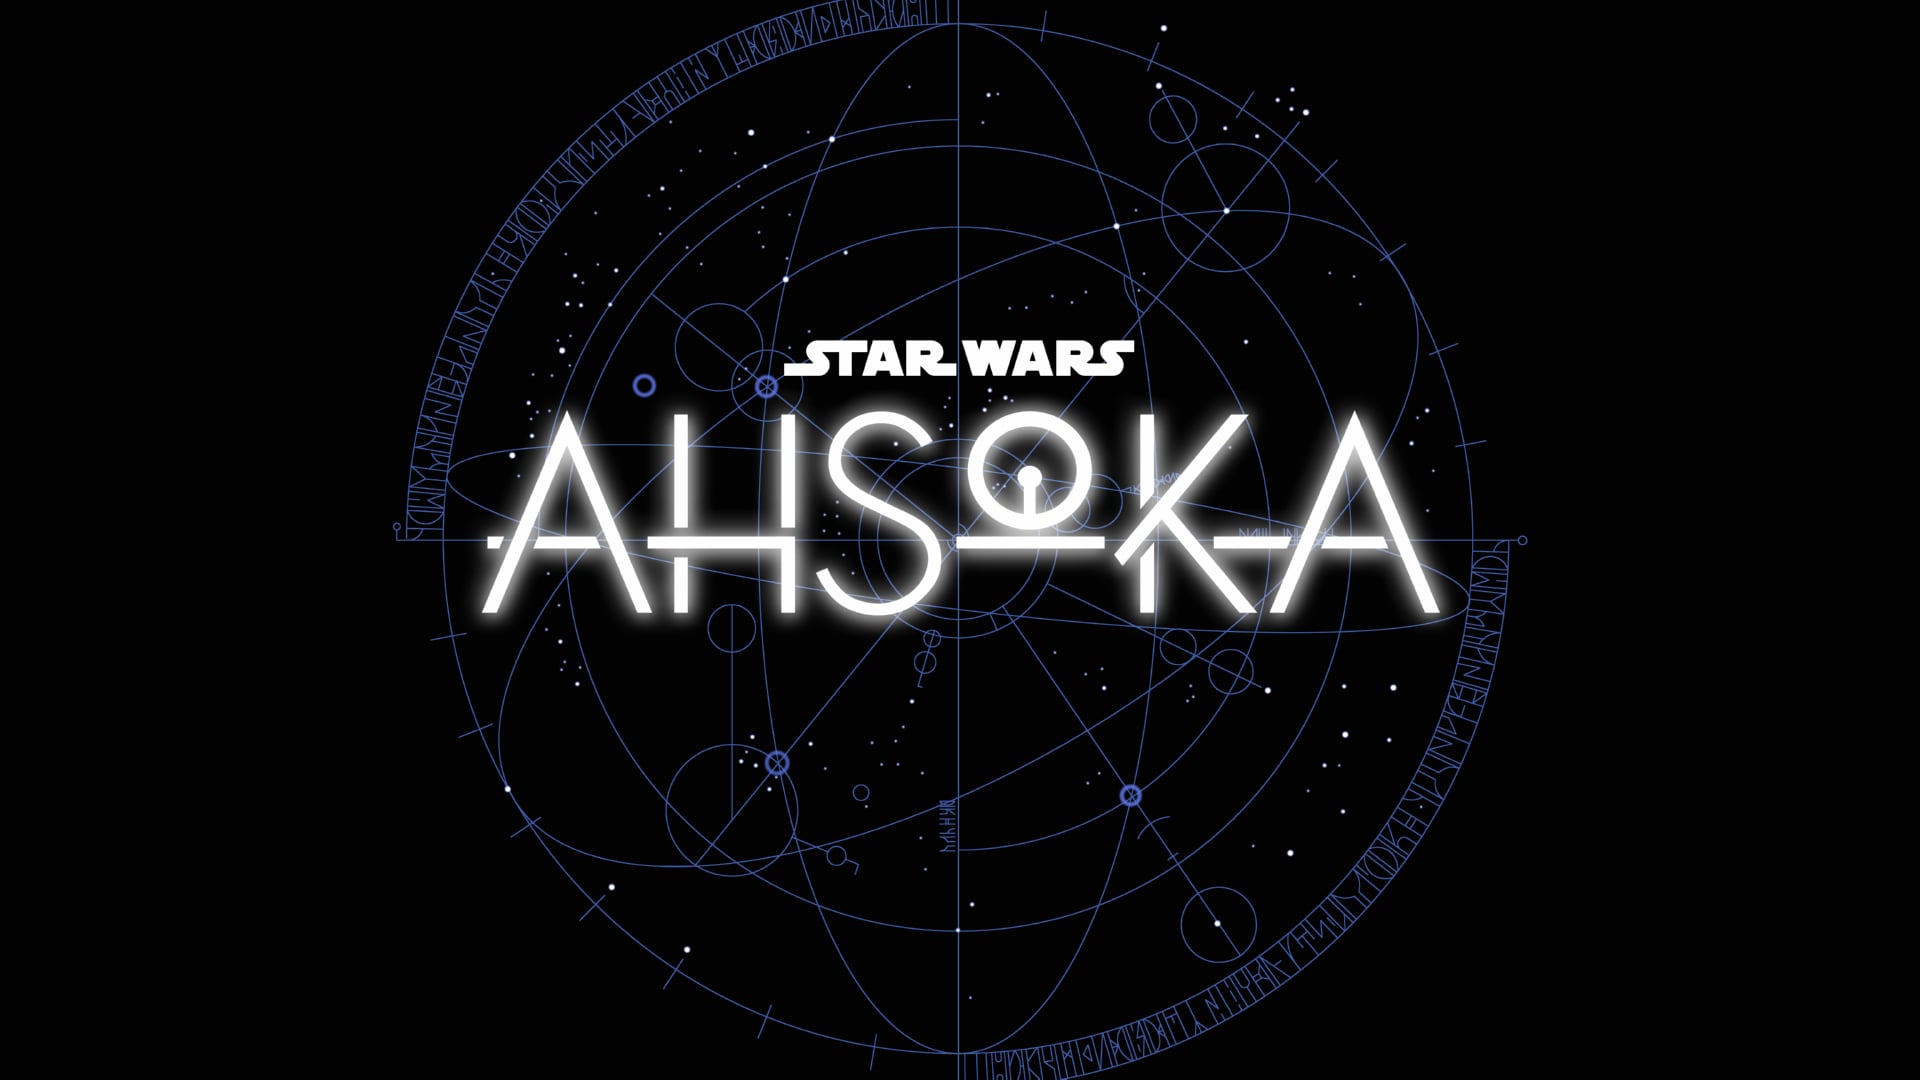 Digital Art Star Wars Ahsoka at 1152 x 864 size wallpapers HD quality